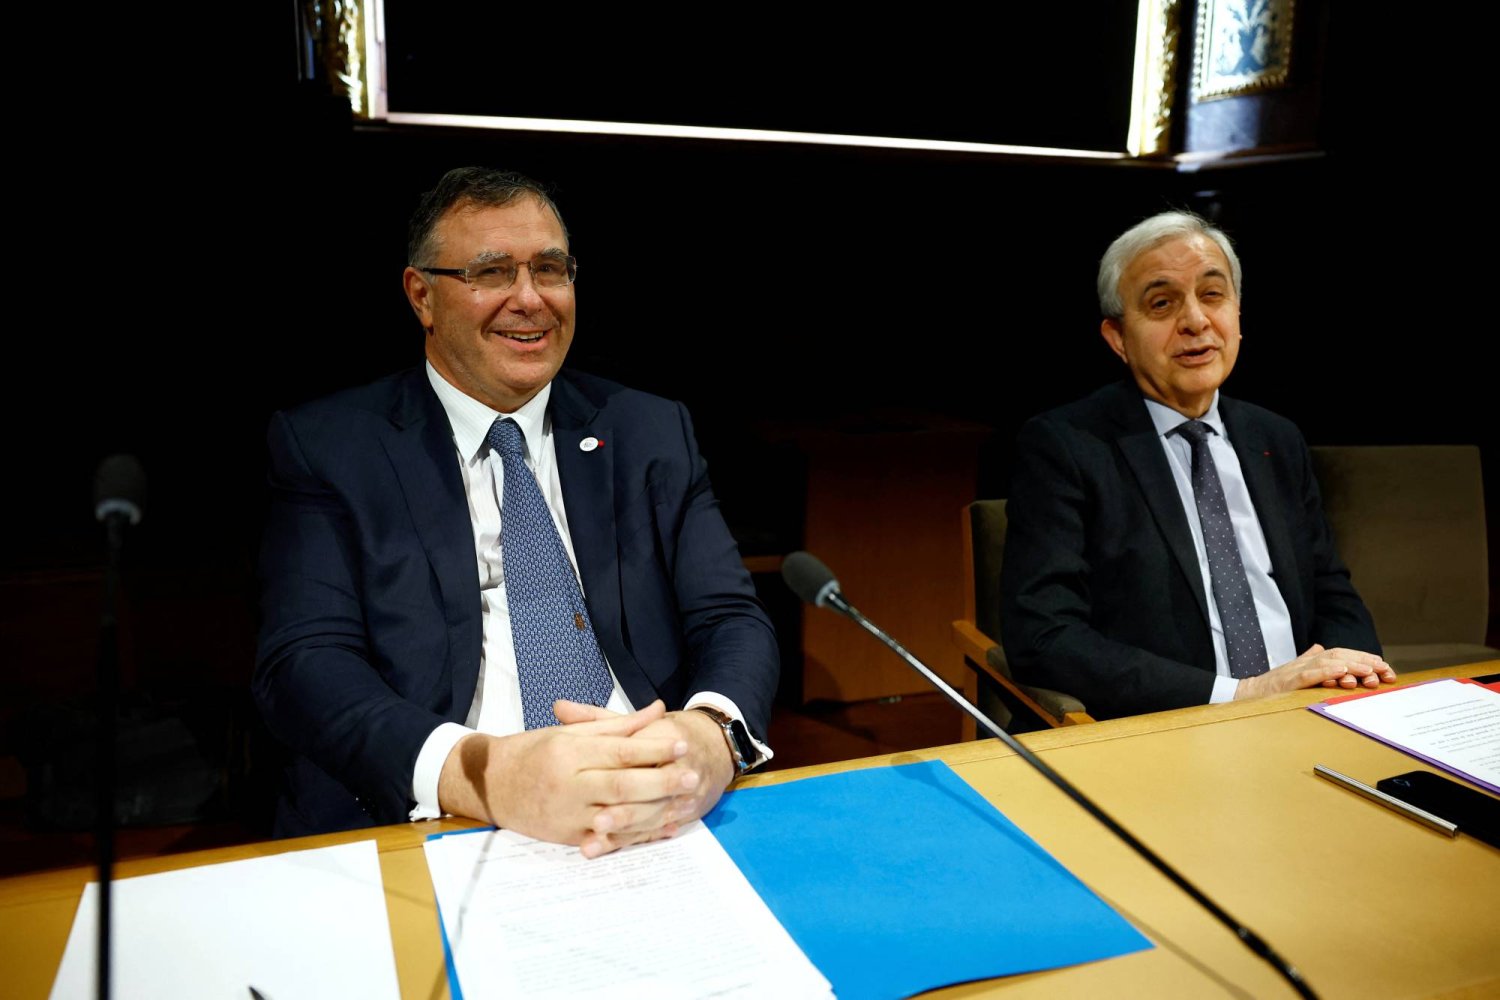 بويان وإلى جانبه النائب روجيه كاروتشي خلال جلسة استماع حول التزامات «توتال» في مجلس الشيوخ الفرنسي بباريس (رويترز)